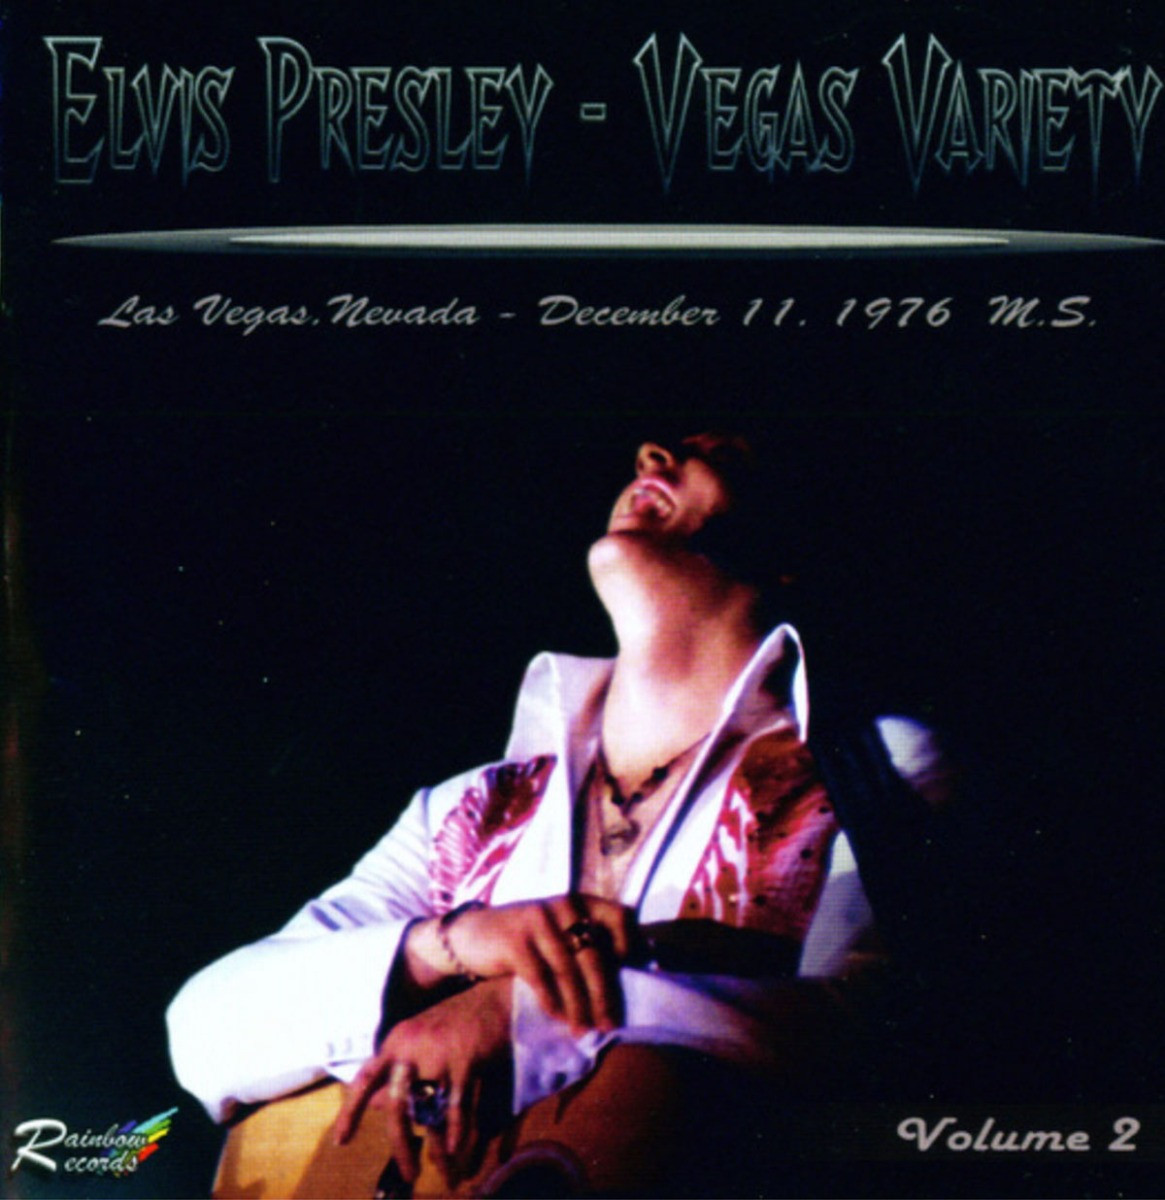 Elvis Presley - Vegas Variety Vol. 2 las Vegas Dec. 11, 1976 2-CD